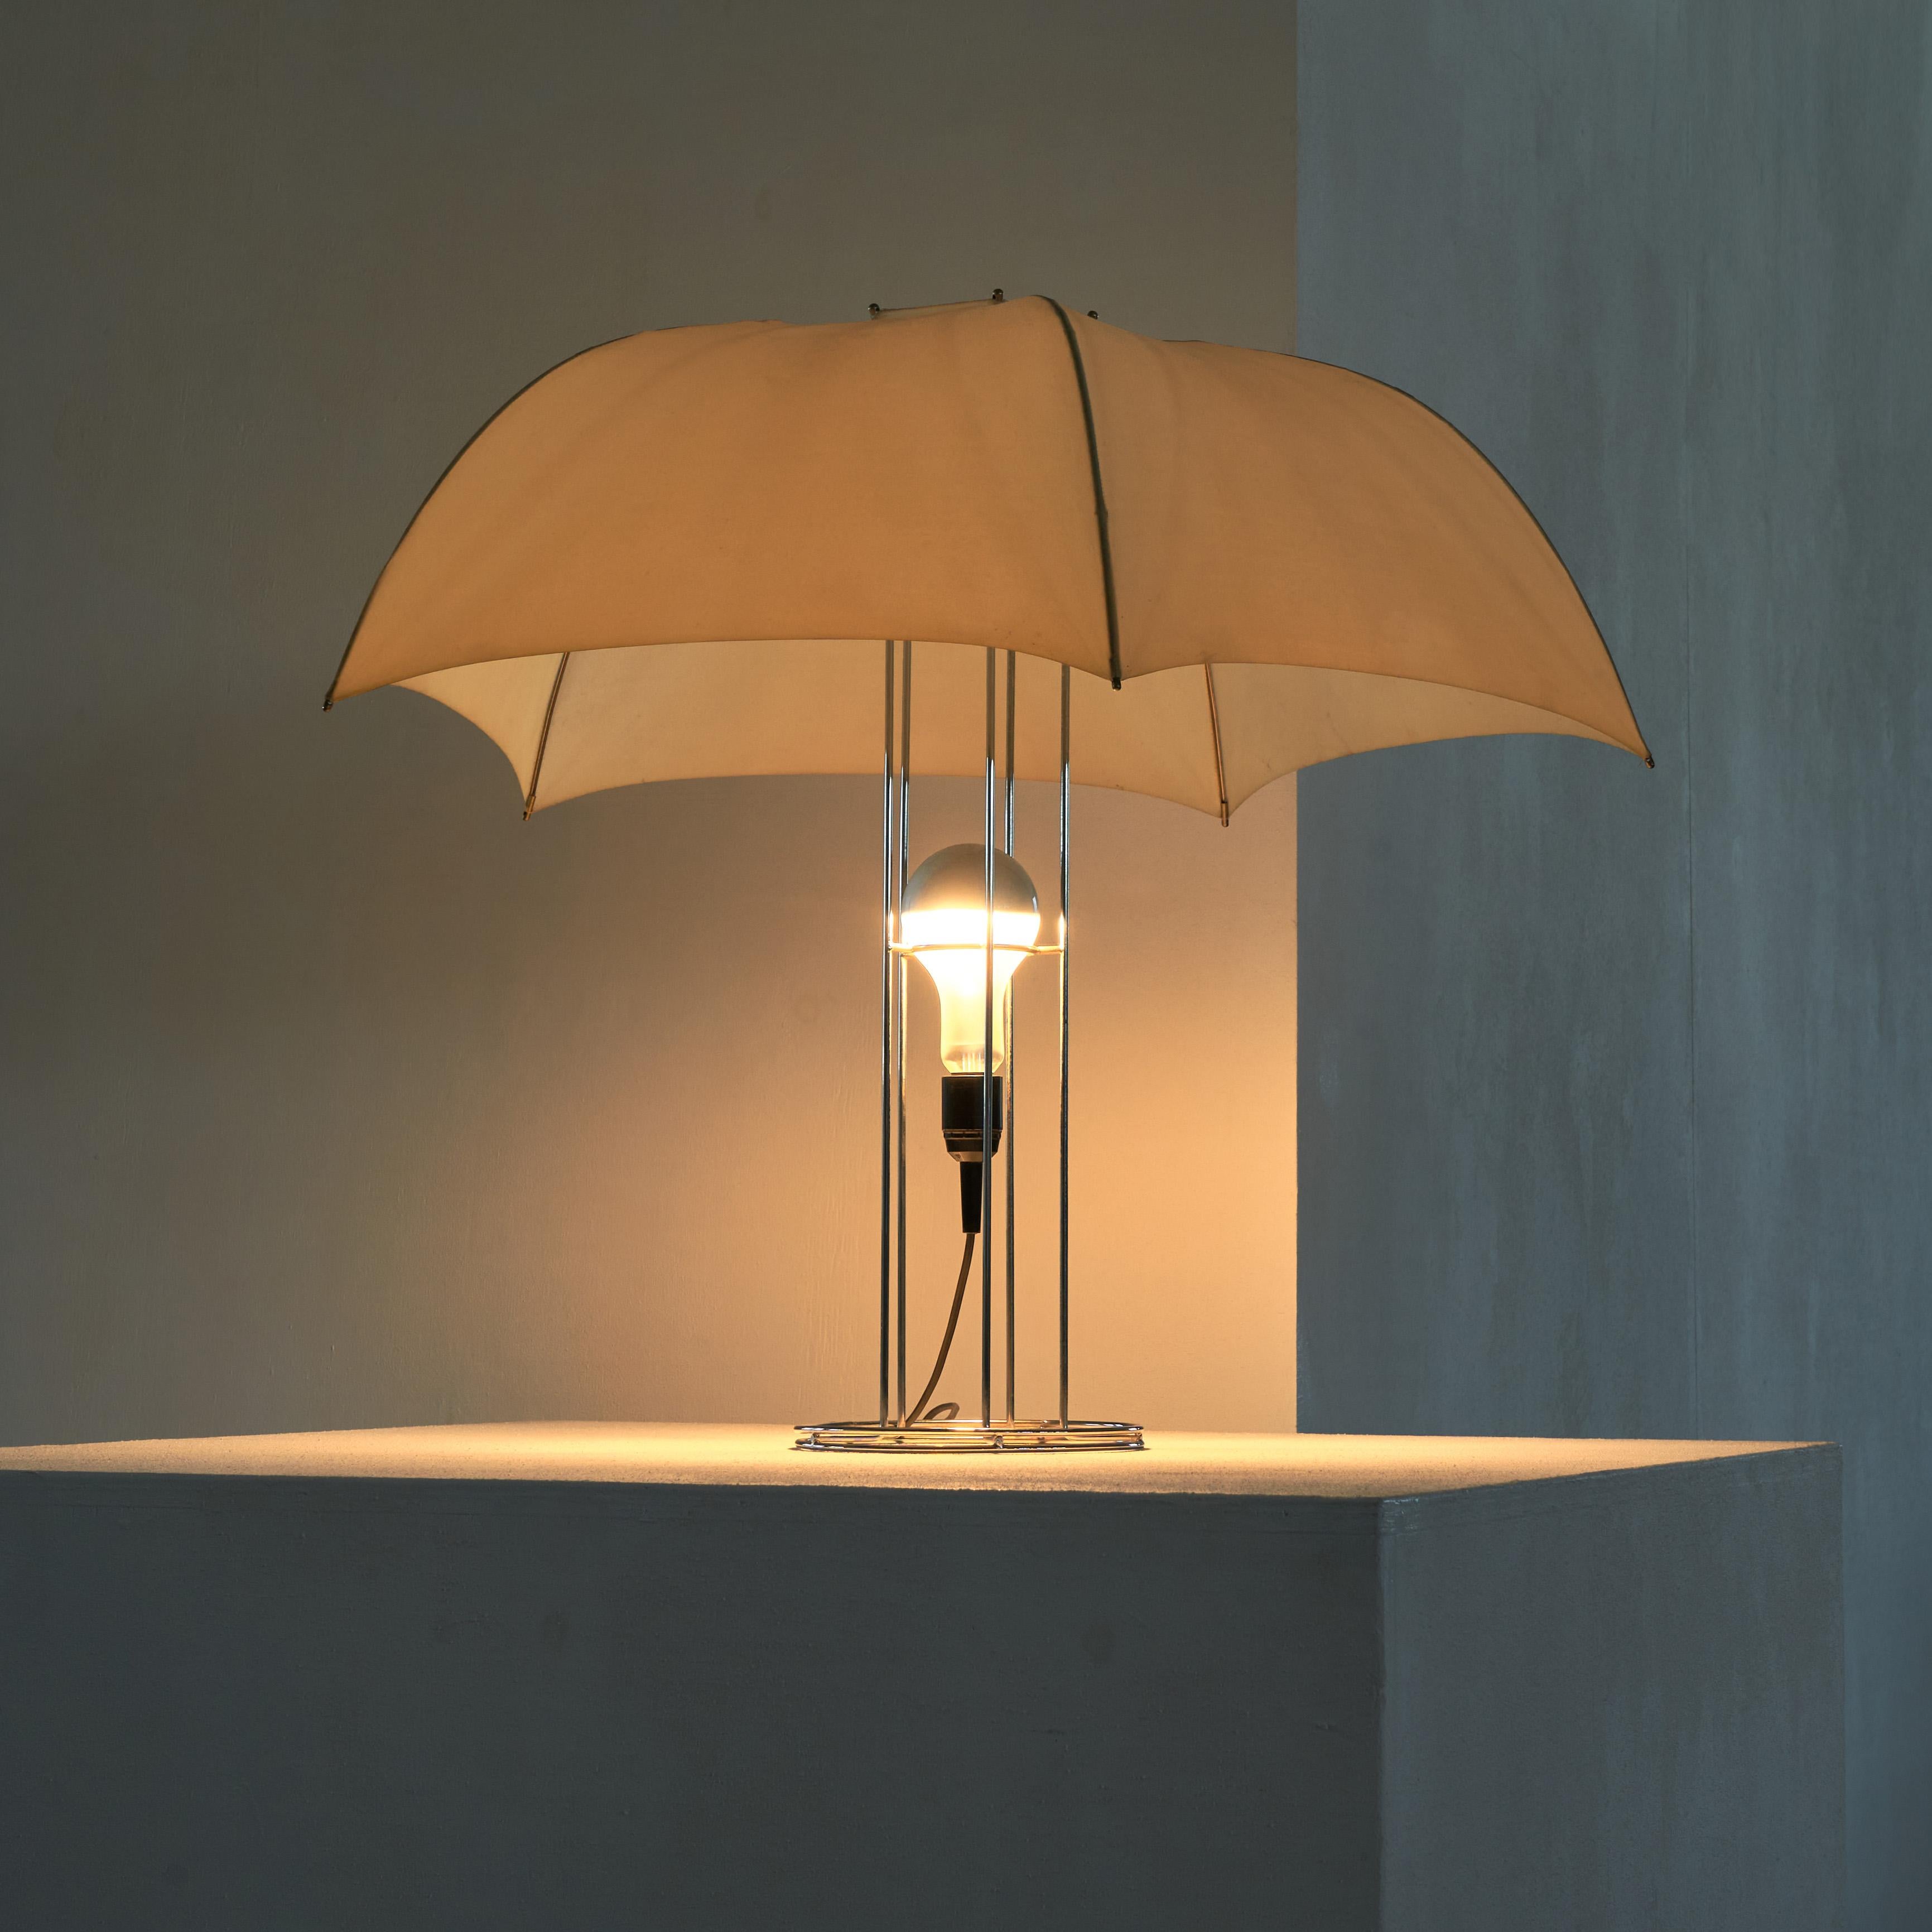 Lampe de table parapluie Gijs Bakker pour Artimeta, Pays-Bas 1973.

Il s'agit de l'une des pièces les plus emblématiques du designer de meubles et de bijoux néerlandais Gijs Bakker (1942) pour Artimeta. C'est une pièce amusante et intéressante qui